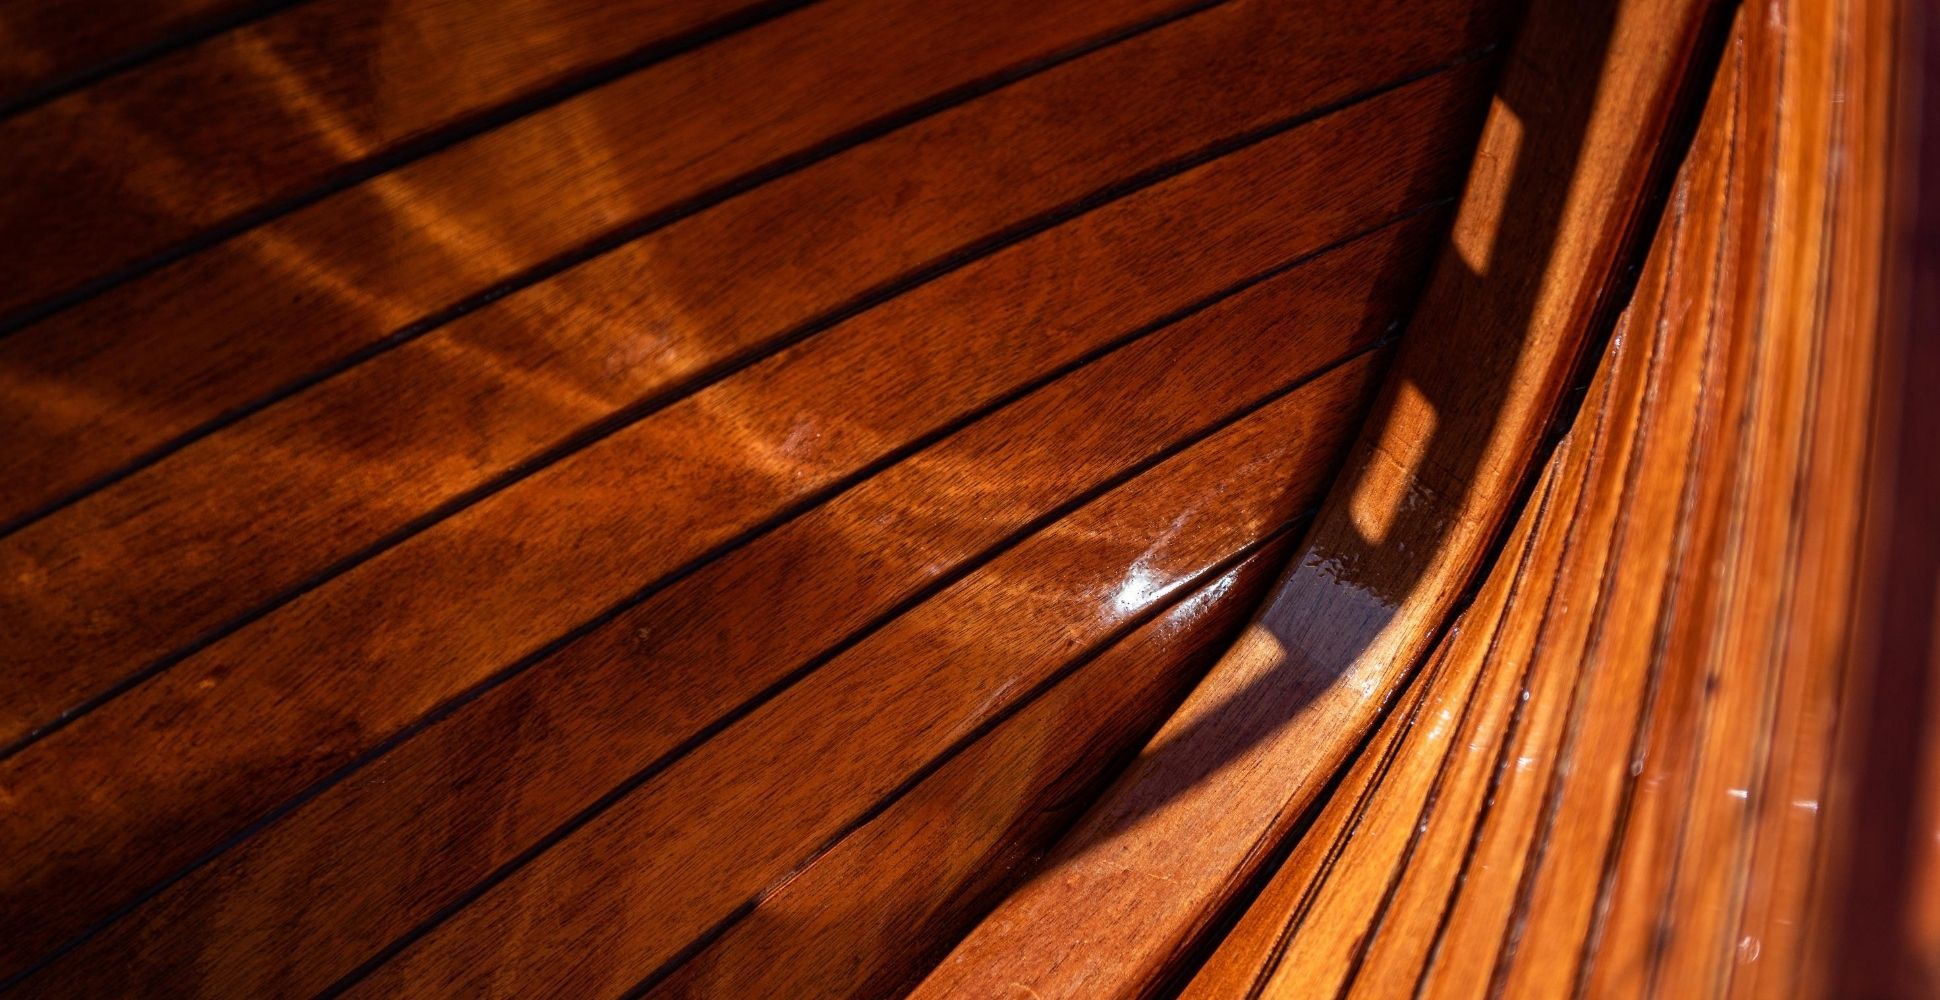 yacht varnish on wood floors